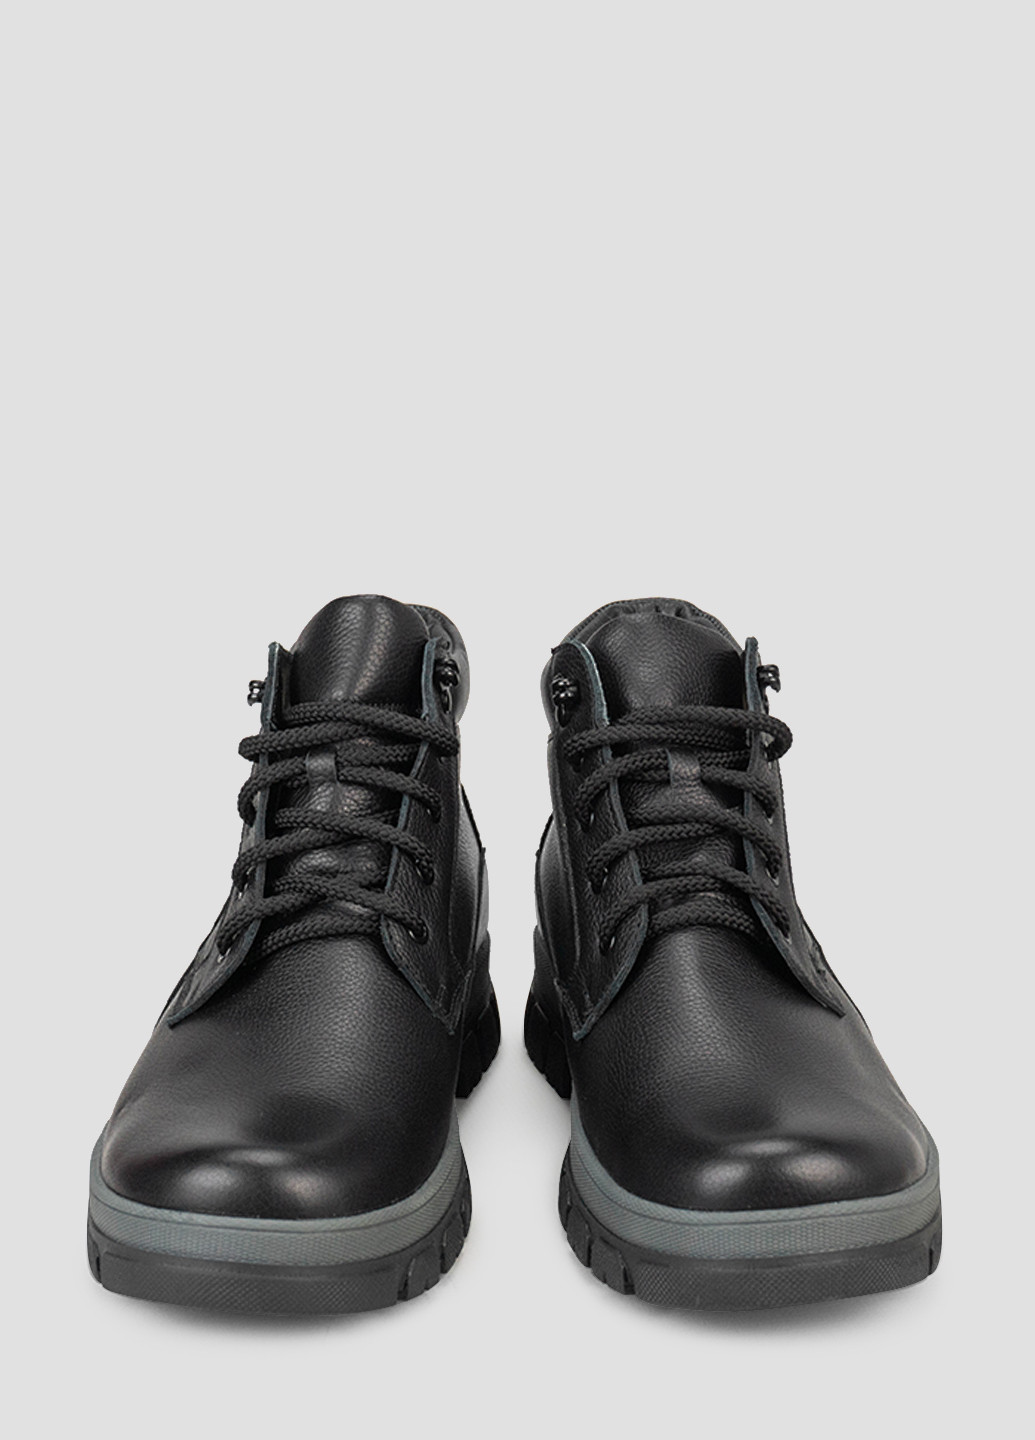 Черные зимние ботинки vm villomi